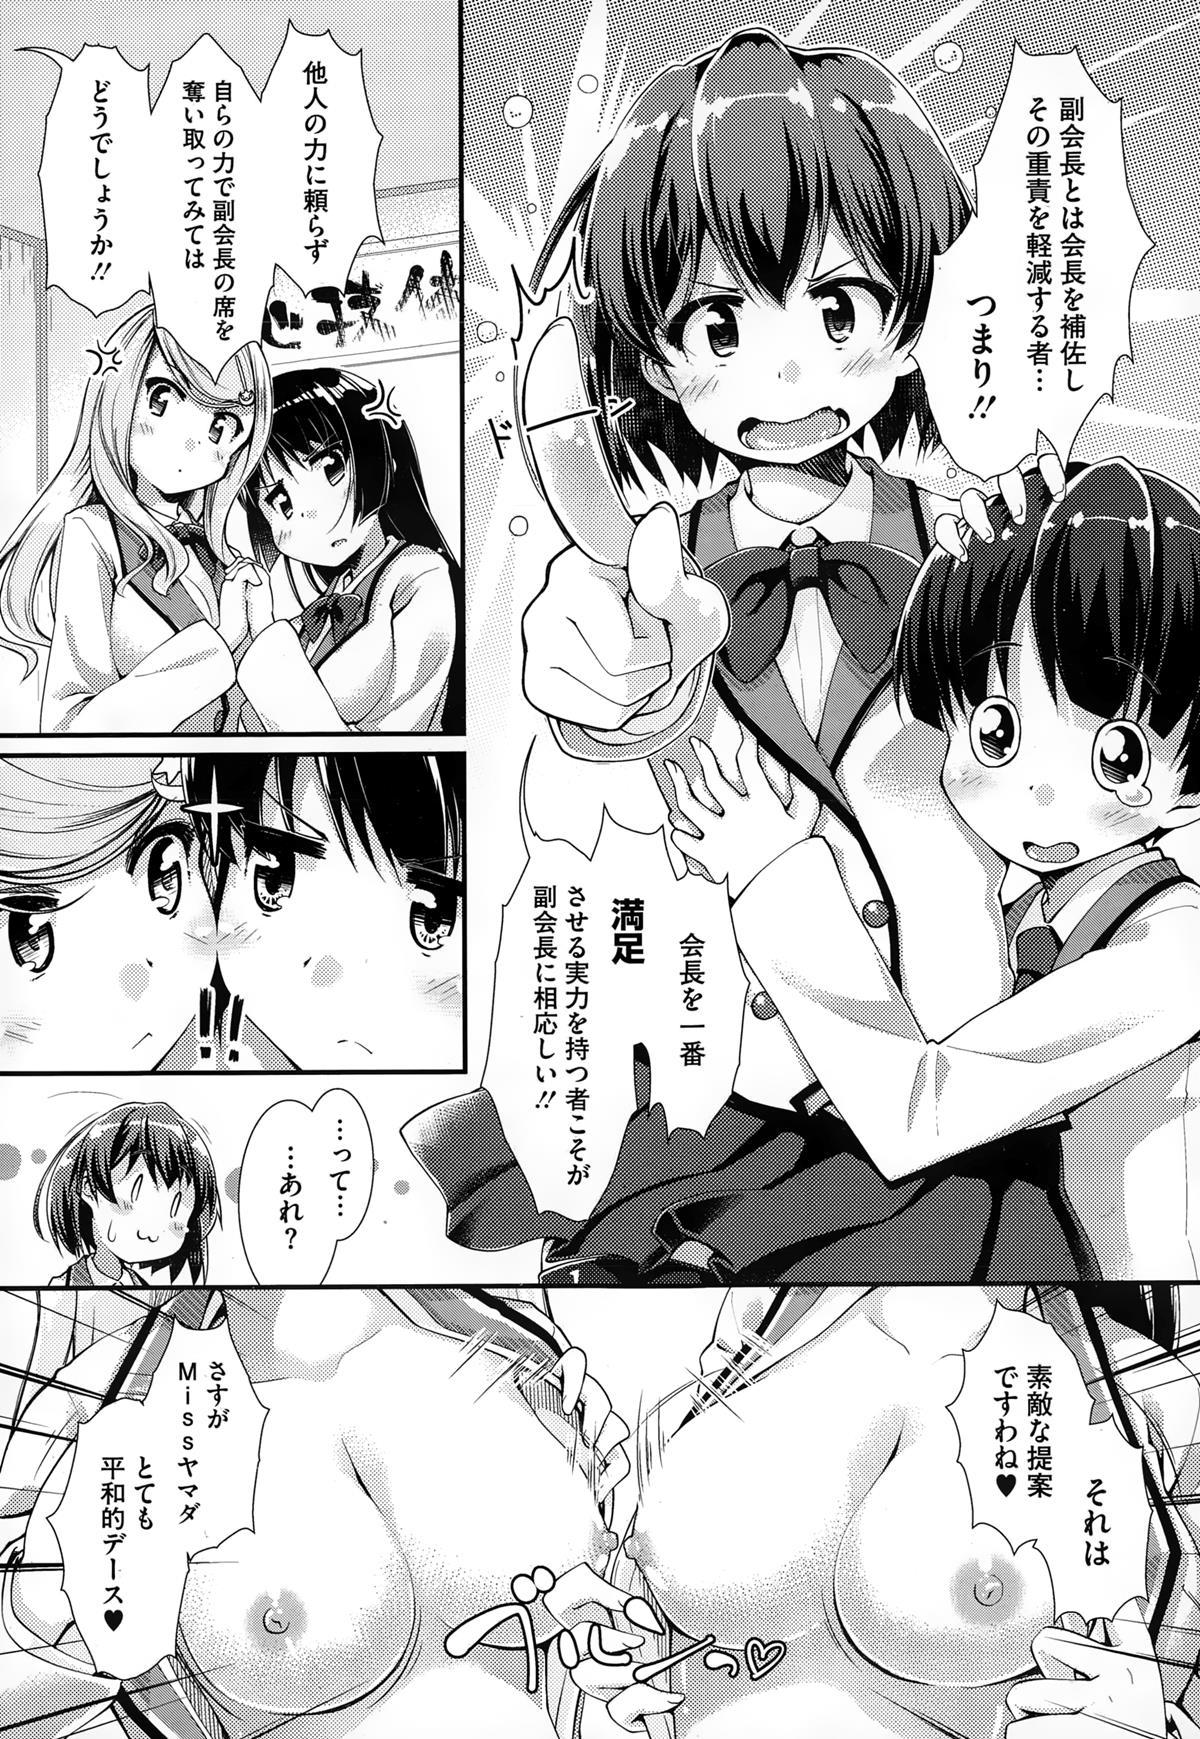 Brother Sister nariyukimakase no obbligato Compilation - Page 3